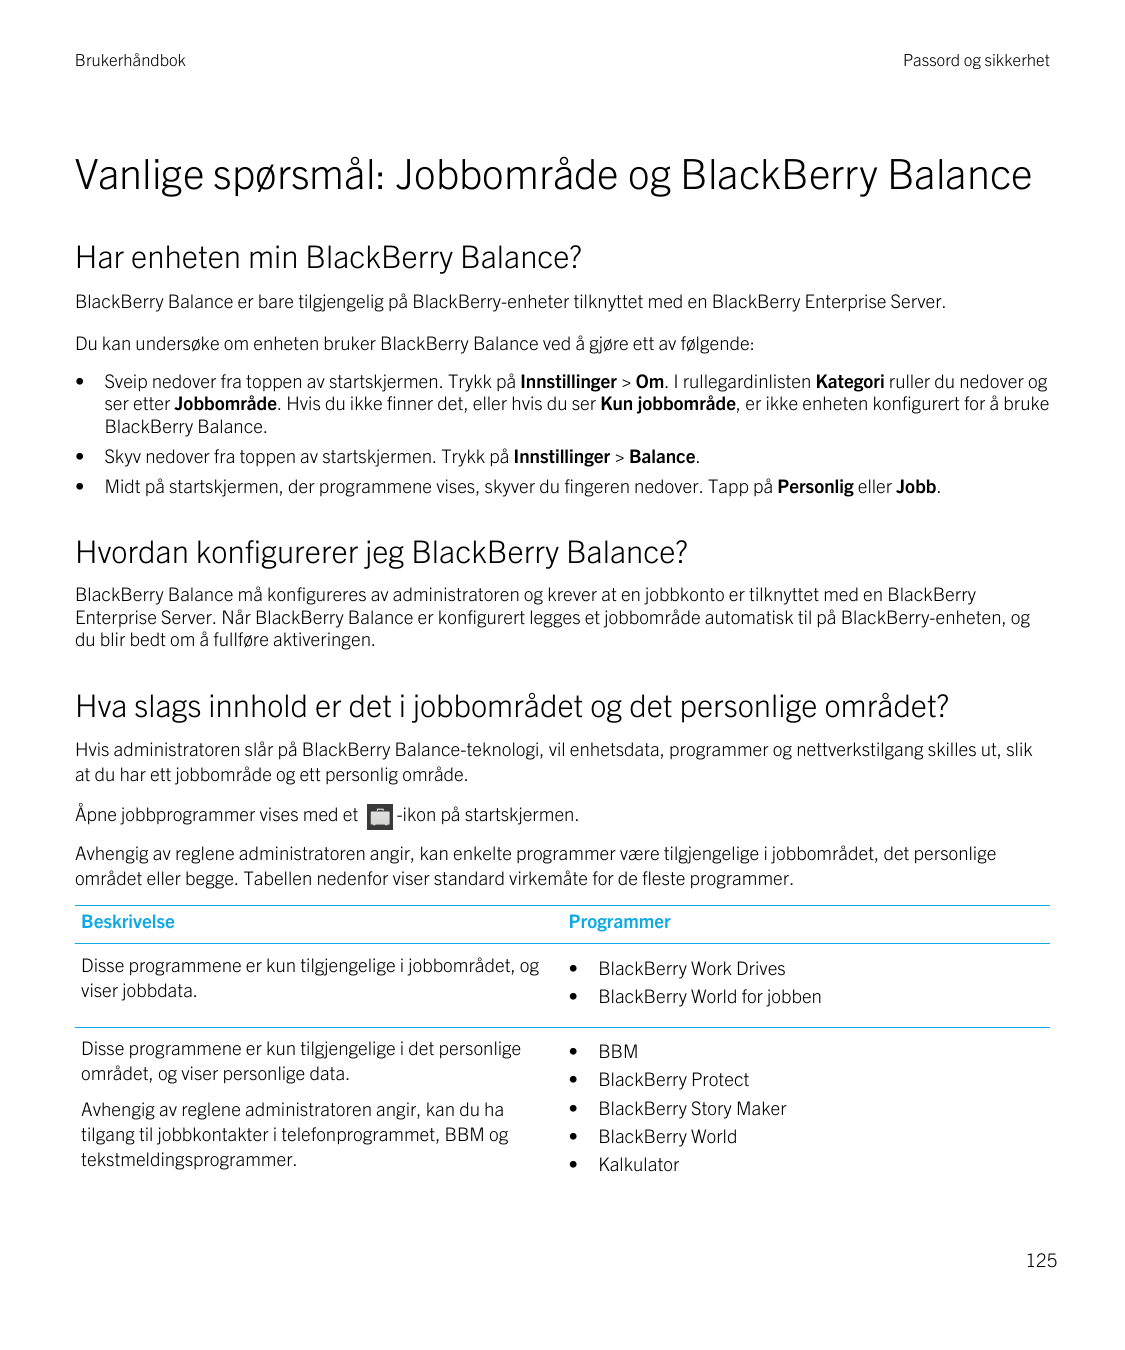 BrukerhåndbokPassord og sikkerhetVanlige spørsmål: Jobbområde og BlackBerry BalanceHar enheten min BlackBerry Balance?BlackBerry